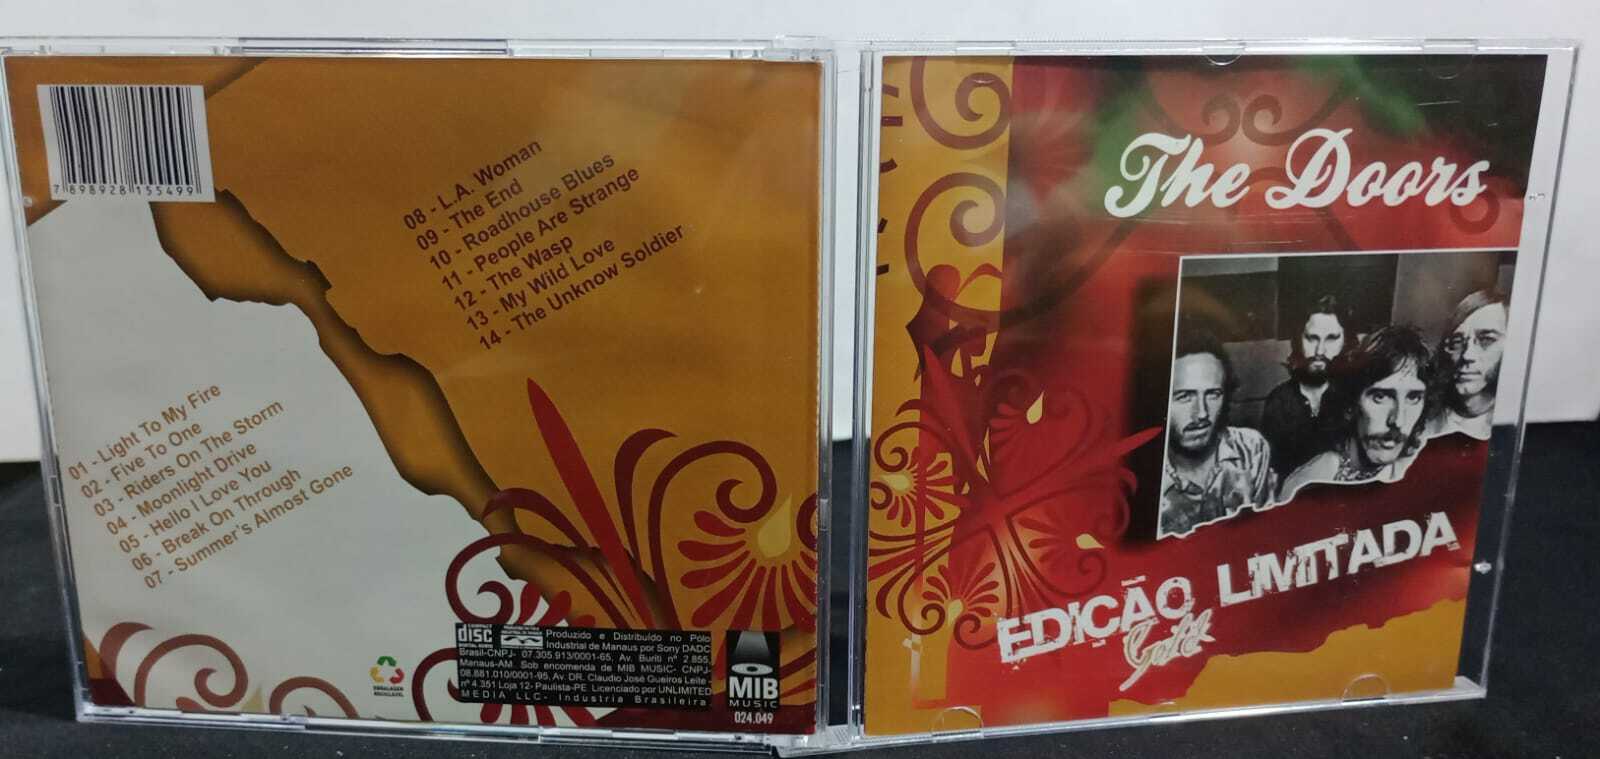 CD - Doors the - edição limitada gold